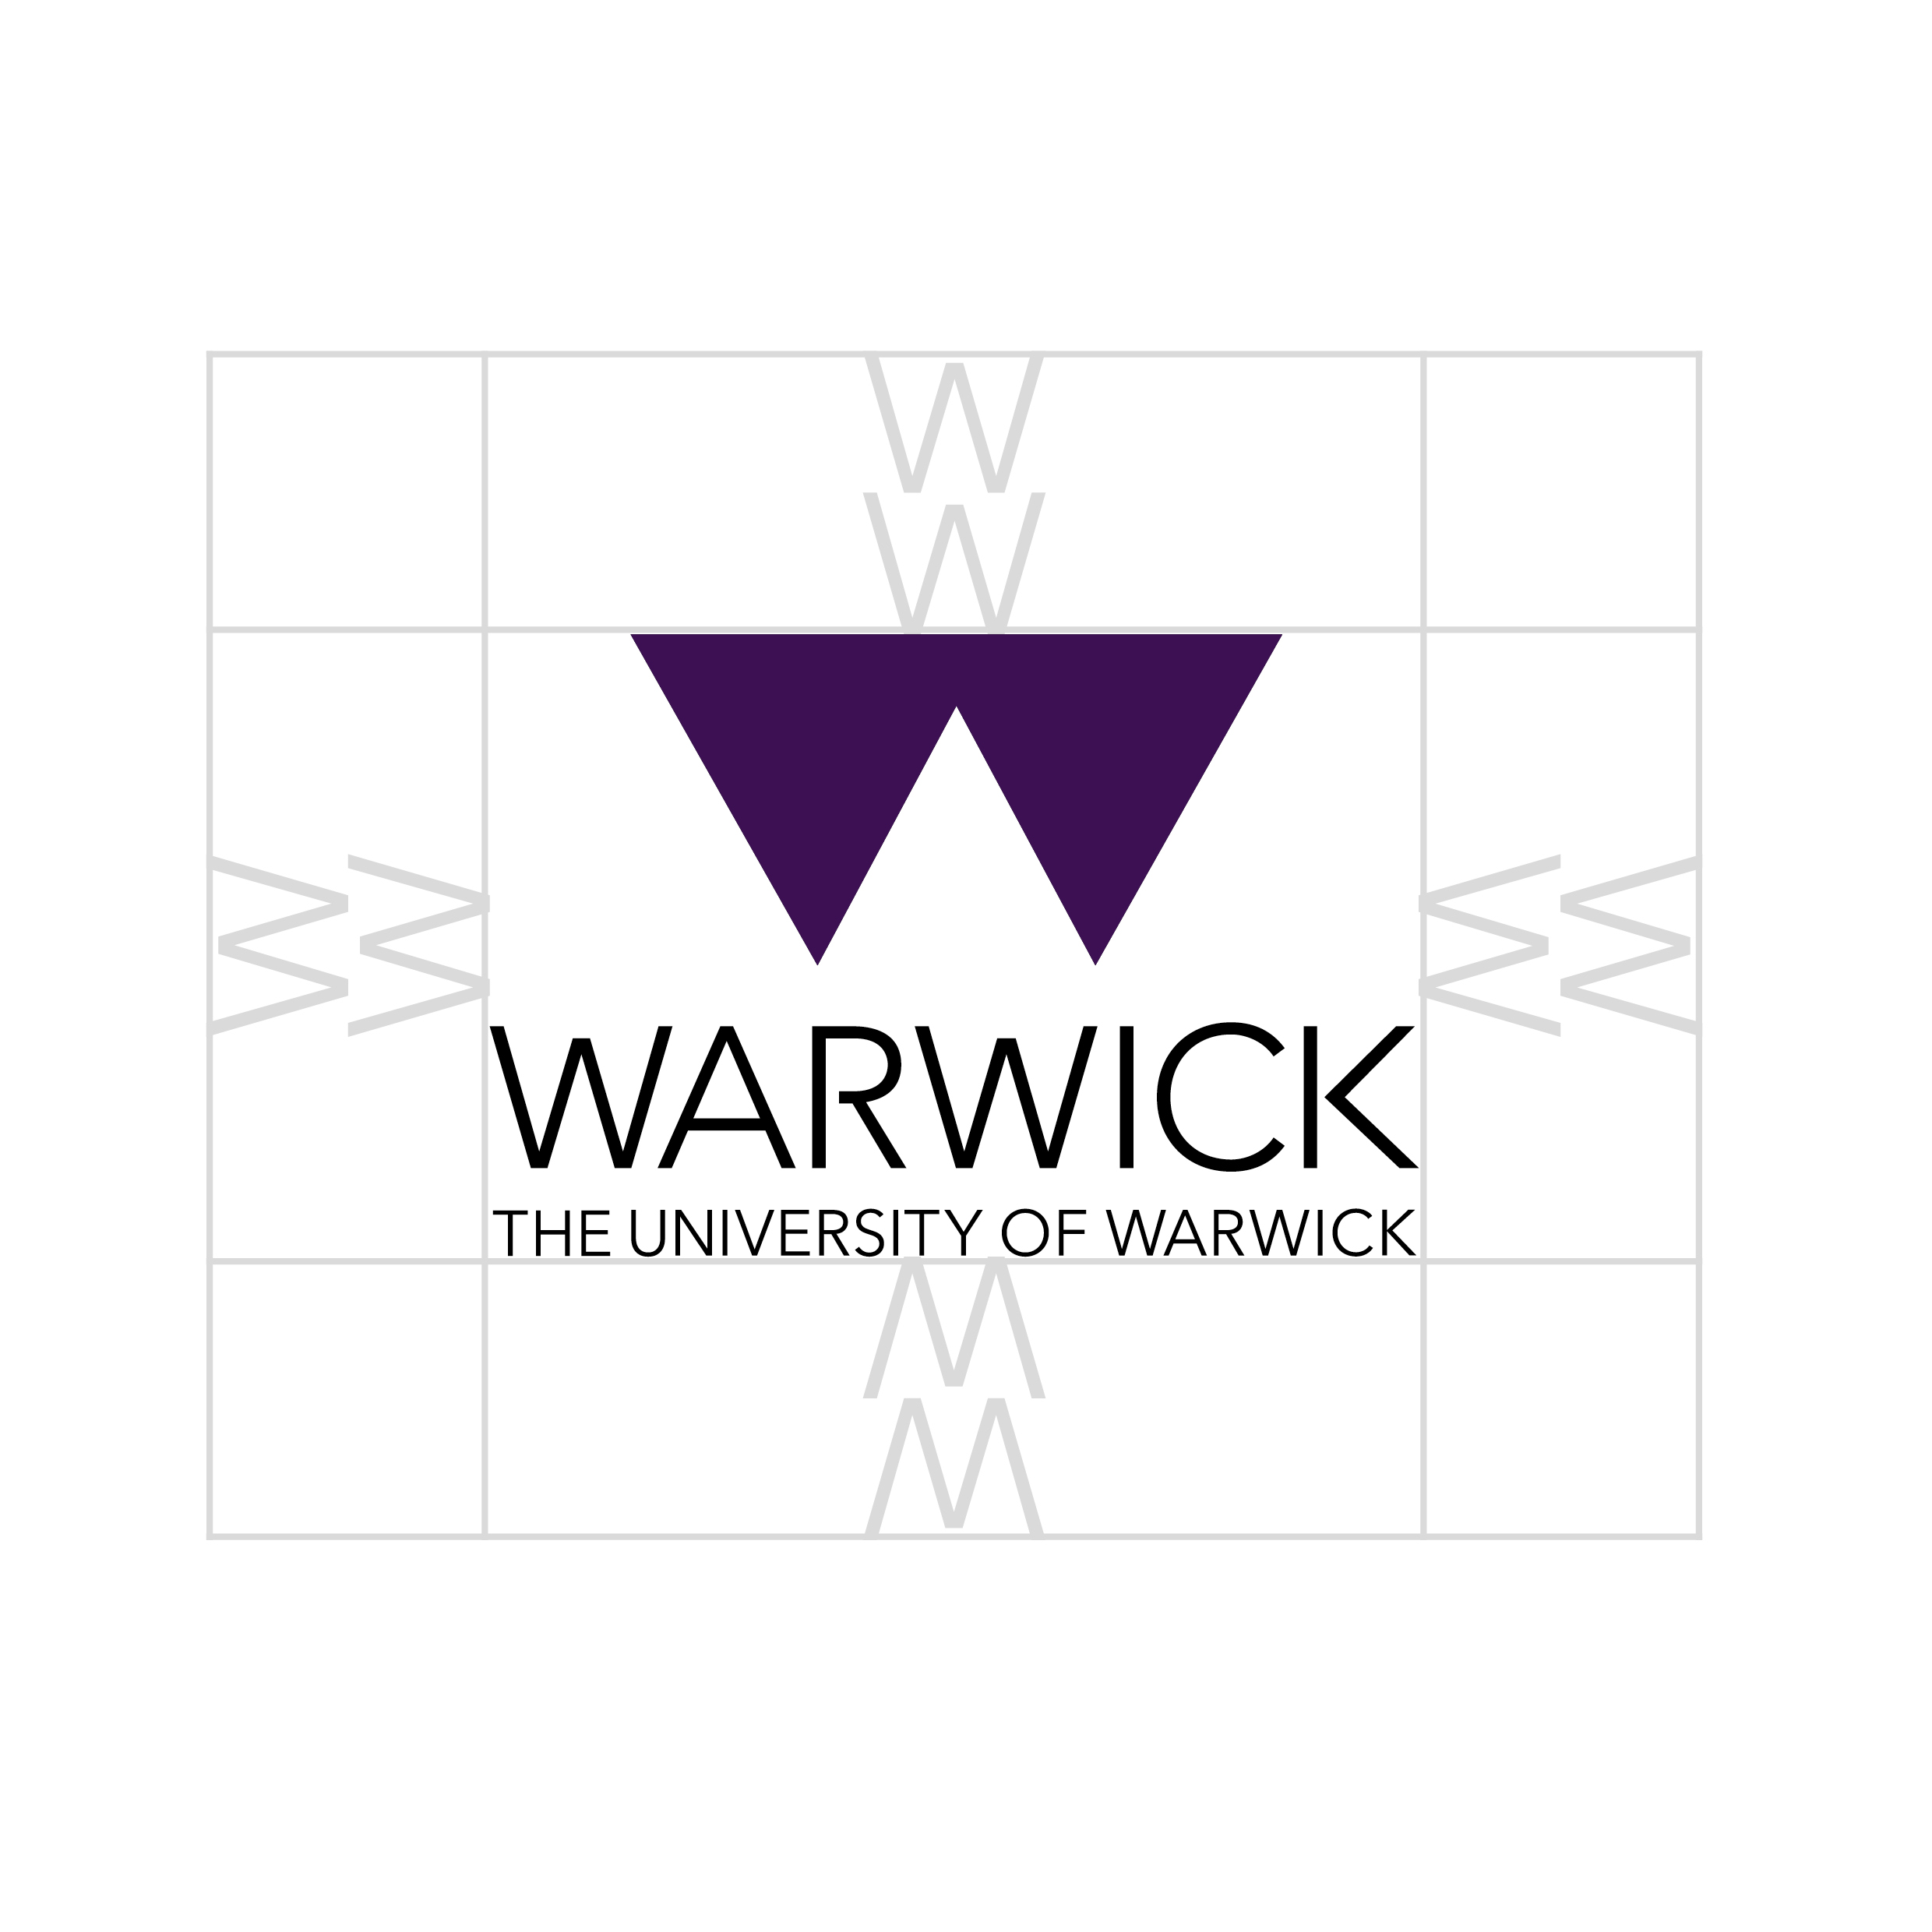 Warwick logo exclusion zone